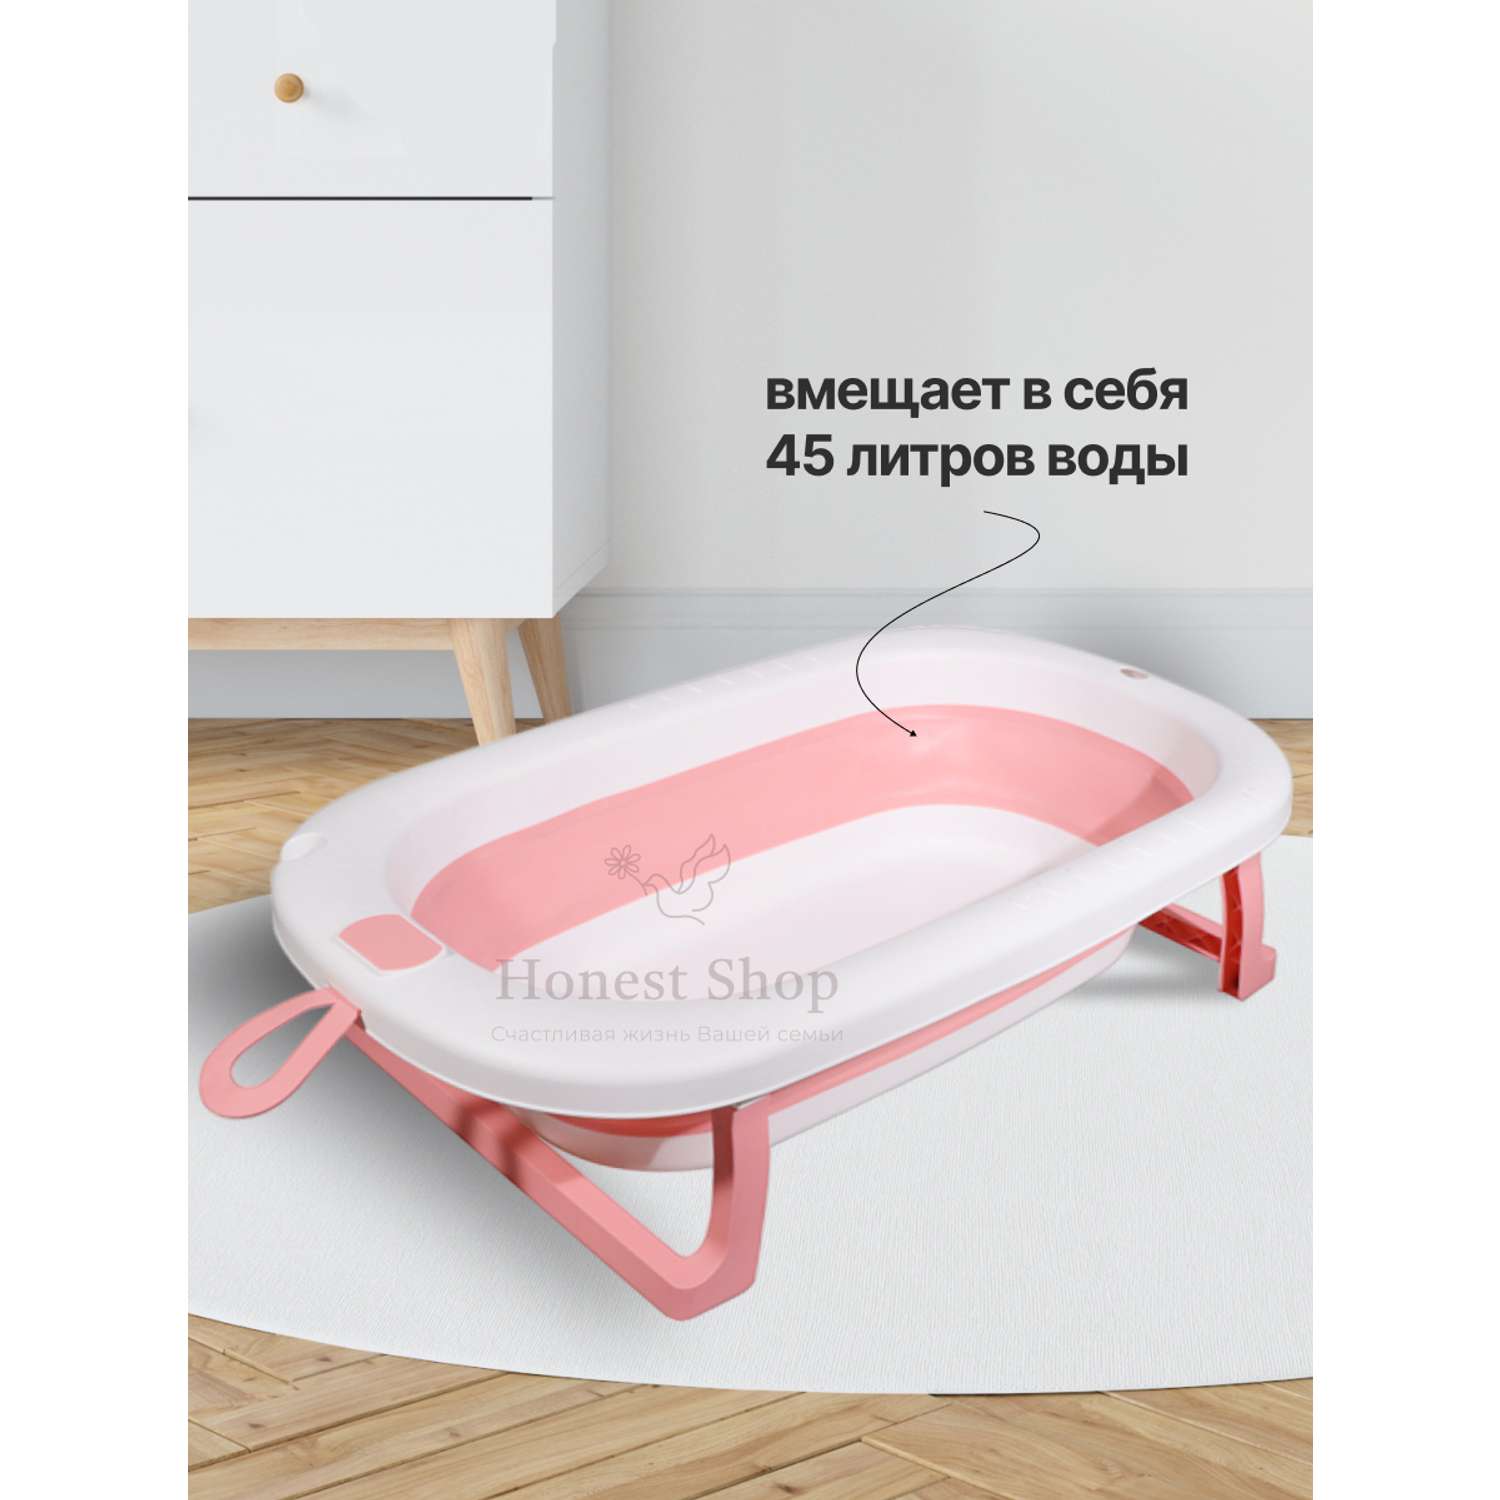 Детская ванночка Honest Shop Вnew-Розовая - фото 8